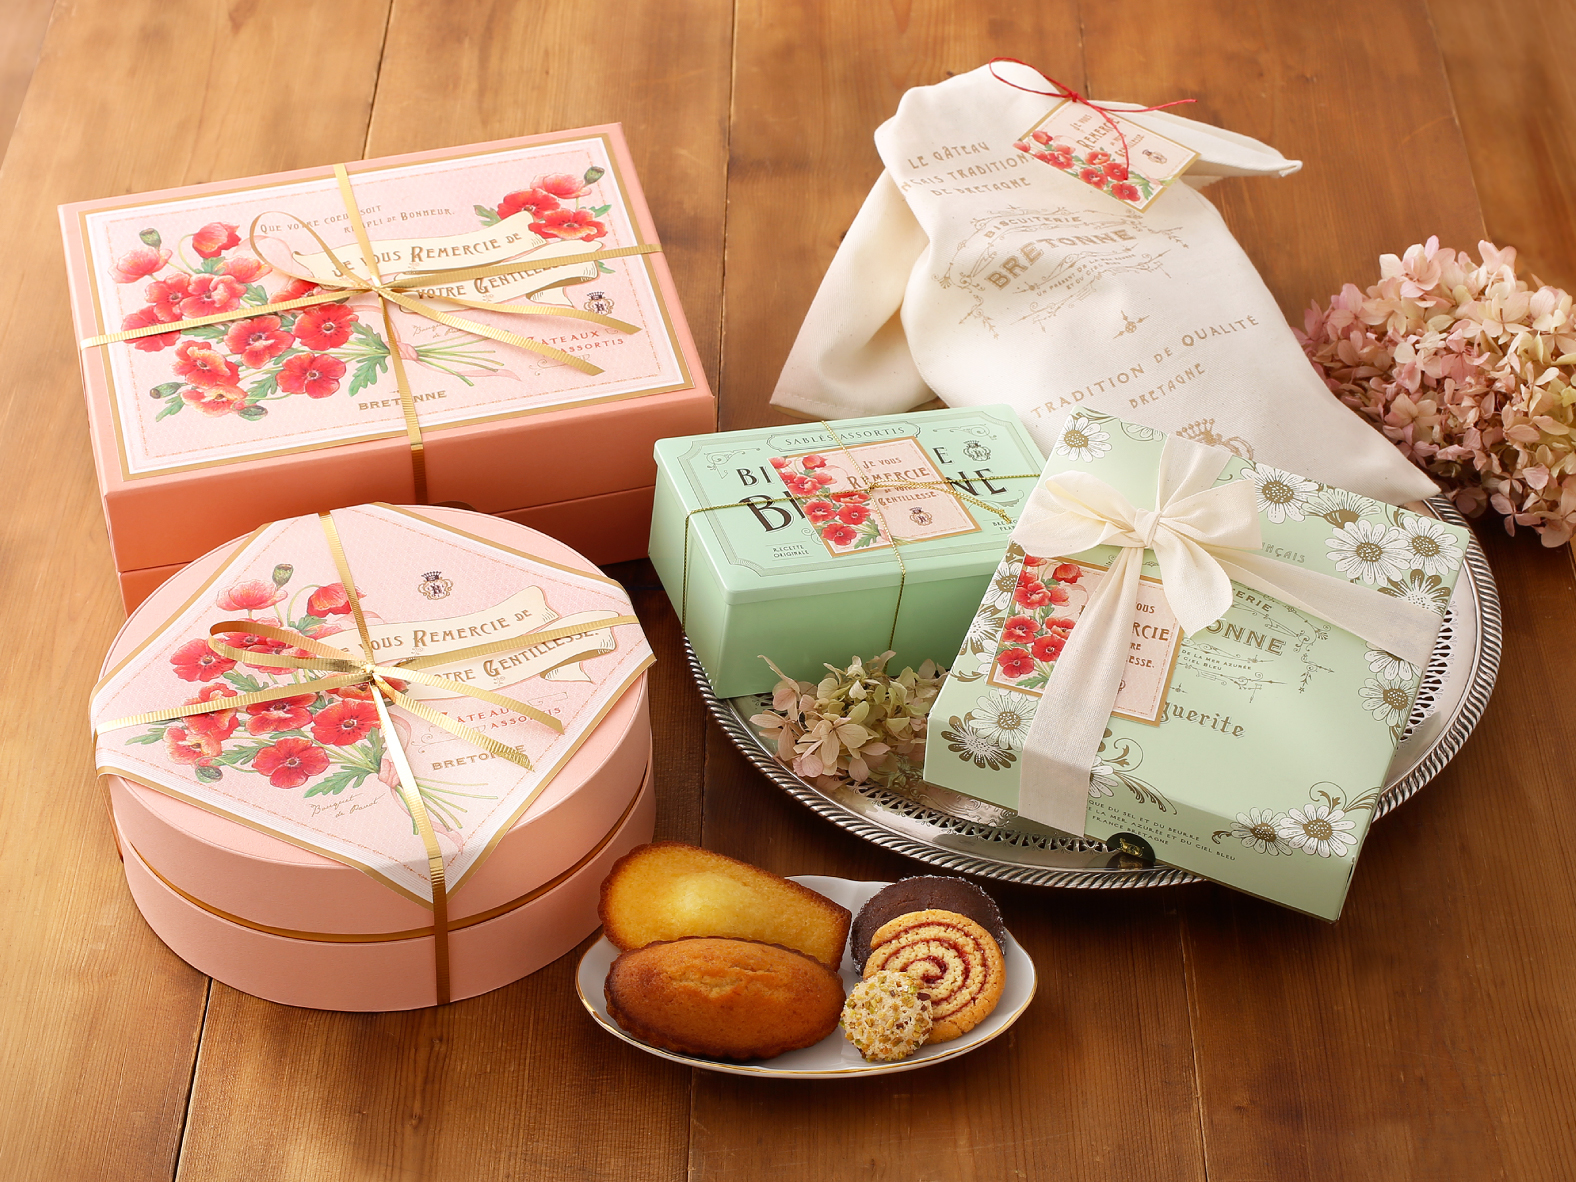 母の日の贈り物に華やかなパッケージに包まれたバター香る焼き菓子を。焼き菓子専門店〈 ビスキュイテリエ ブルトンヌ〉の「フローラルギフト」発売のサブ画像1